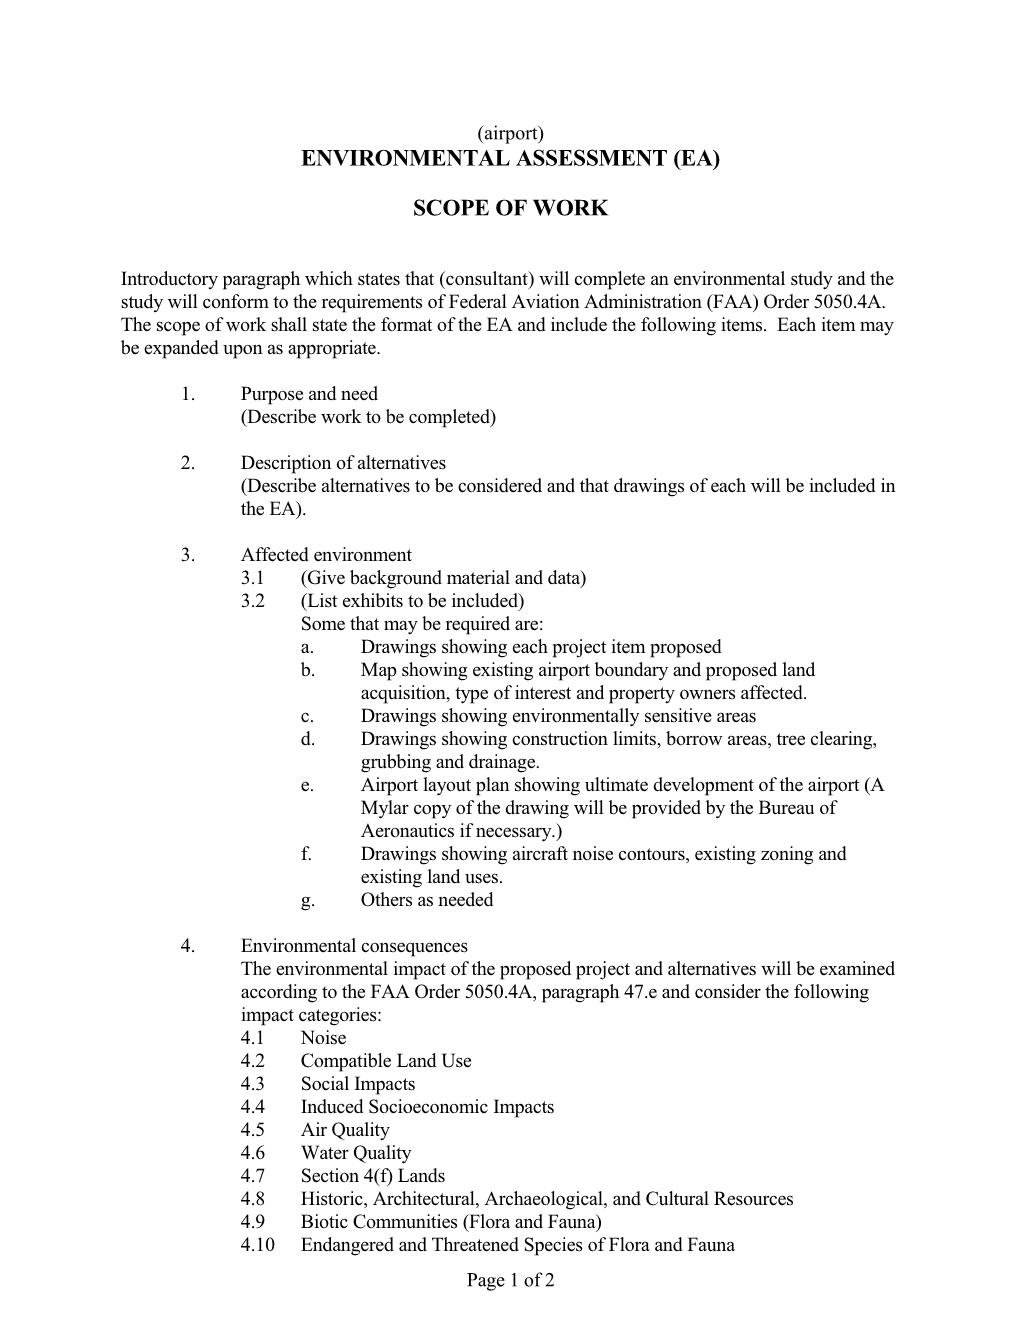 Environmental Assessment Scope of Work